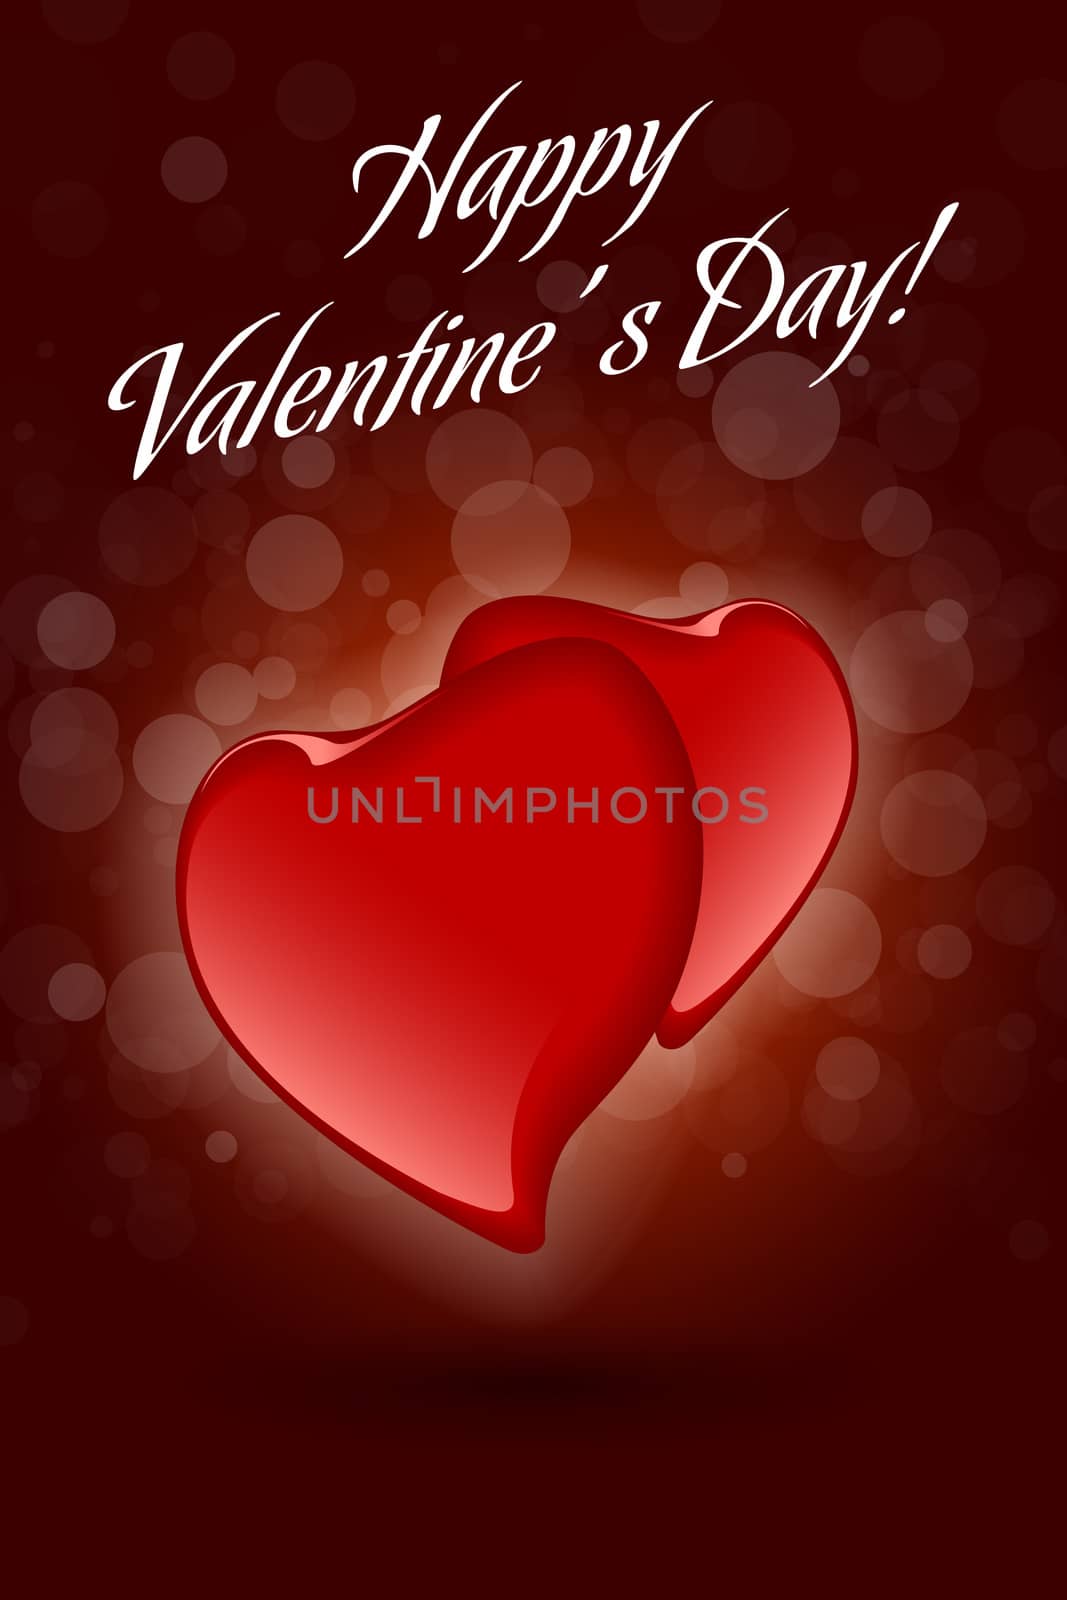 Red Valentine Hearts on Dark Decorative Background by WaD